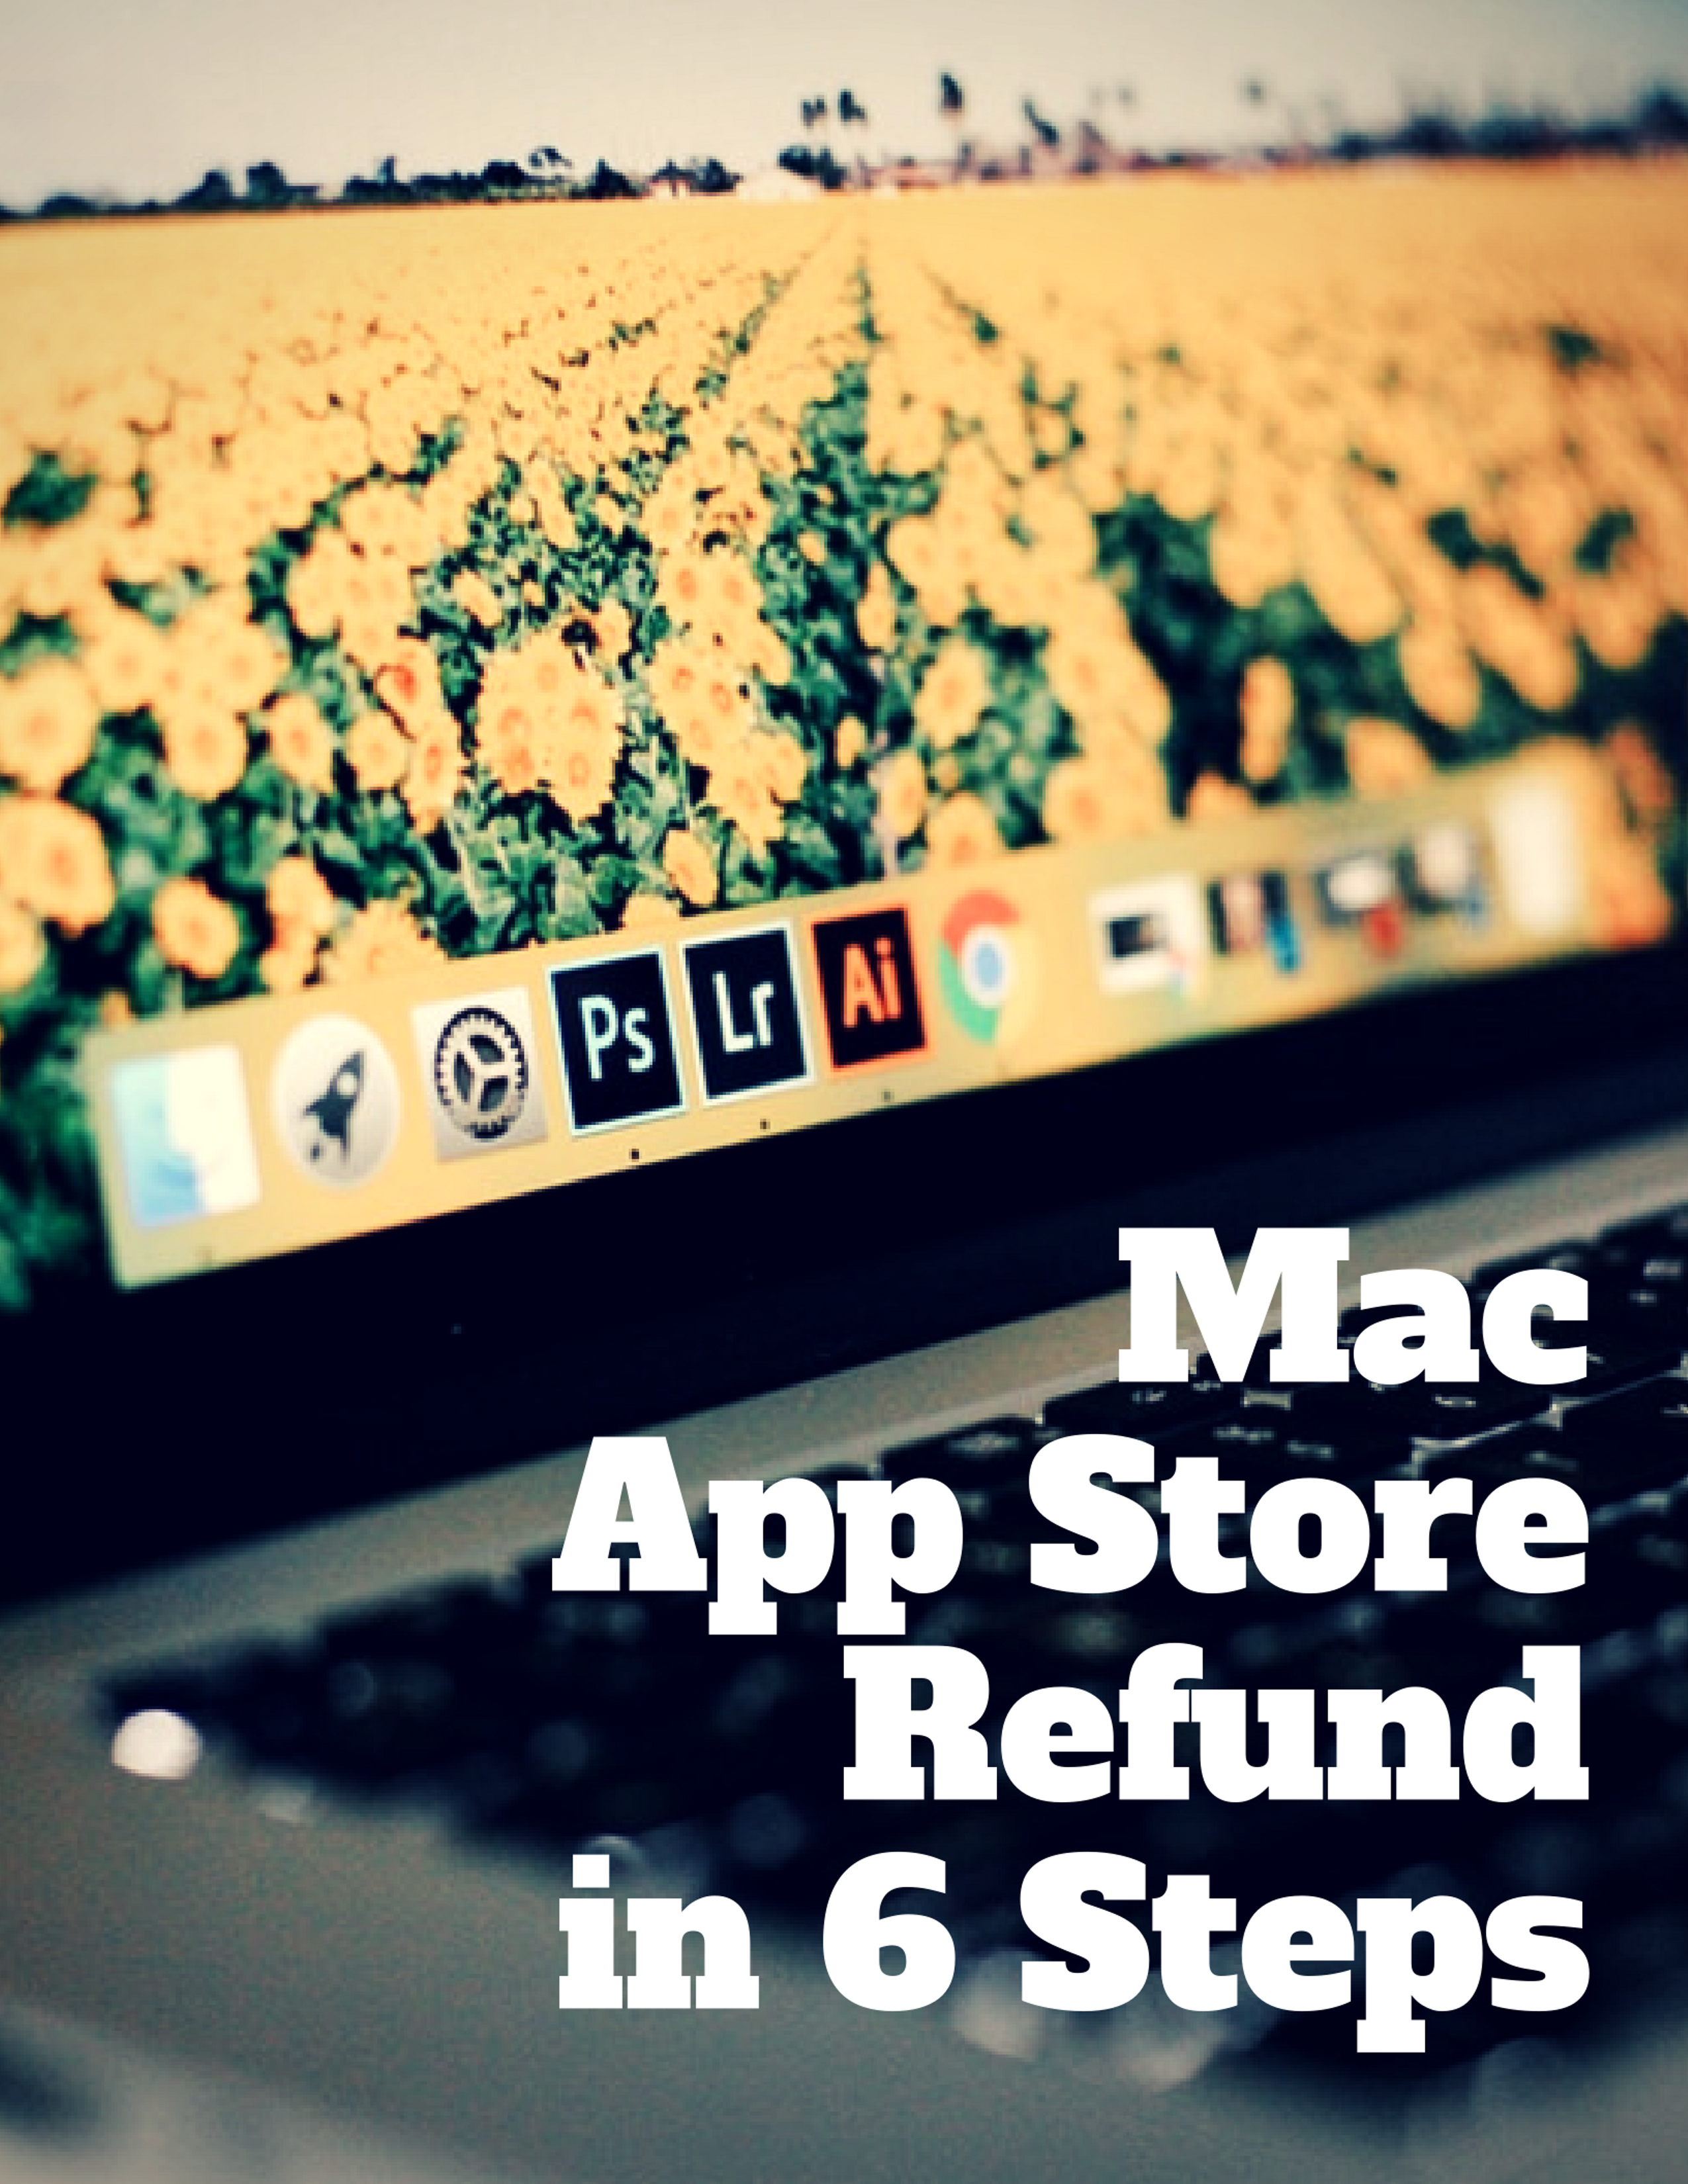 Mac App Store Refund in 6 Steps